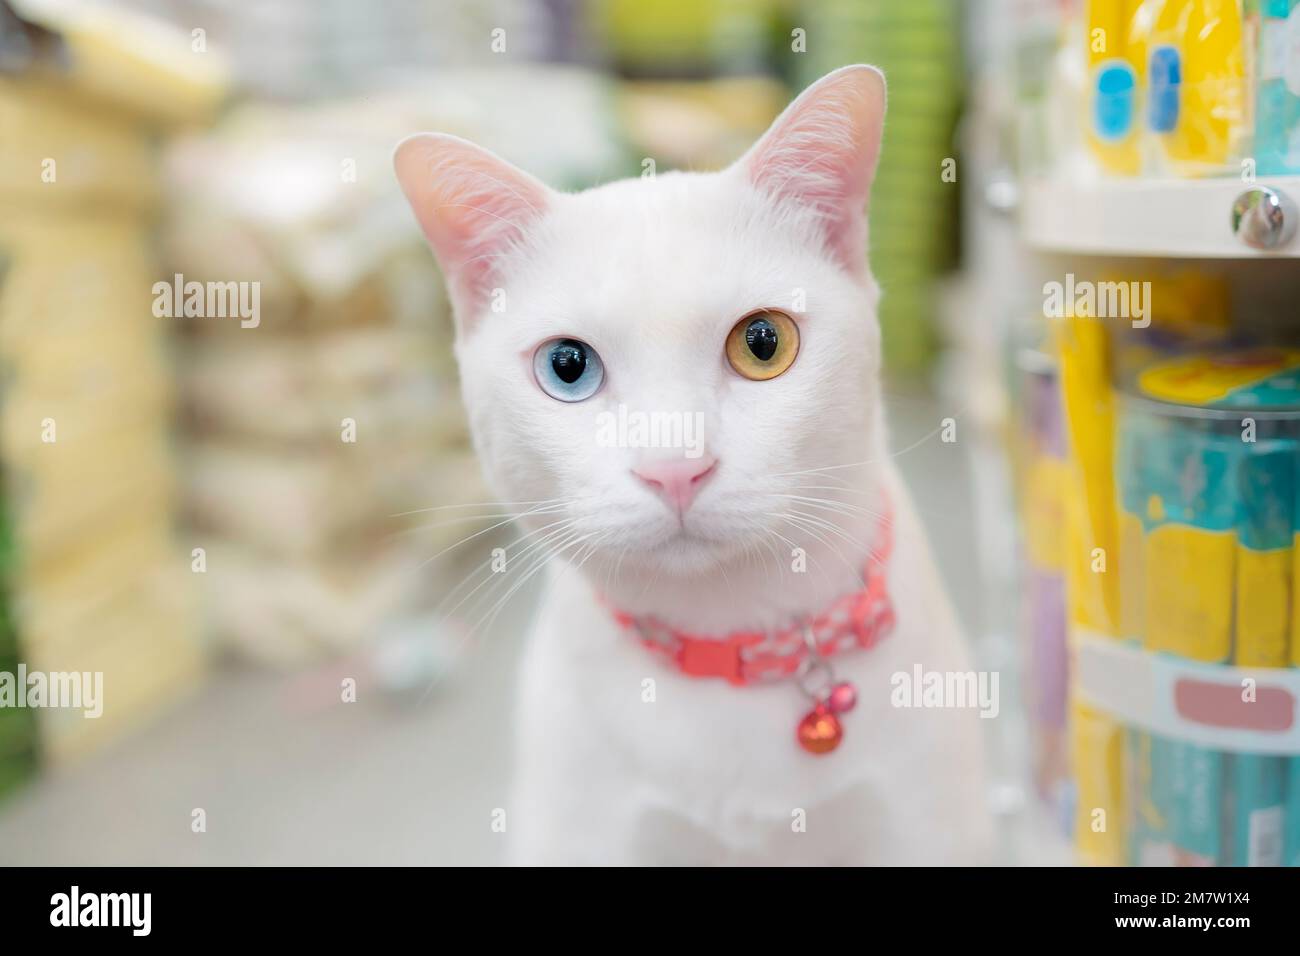 Gros plan d'Un chat blanc avec des yeux impairs ou différentes couleurs d'yeux regarde la caméra sérieusement dans les magasins d'animaux de compagnie de nourriture Banque D'Images